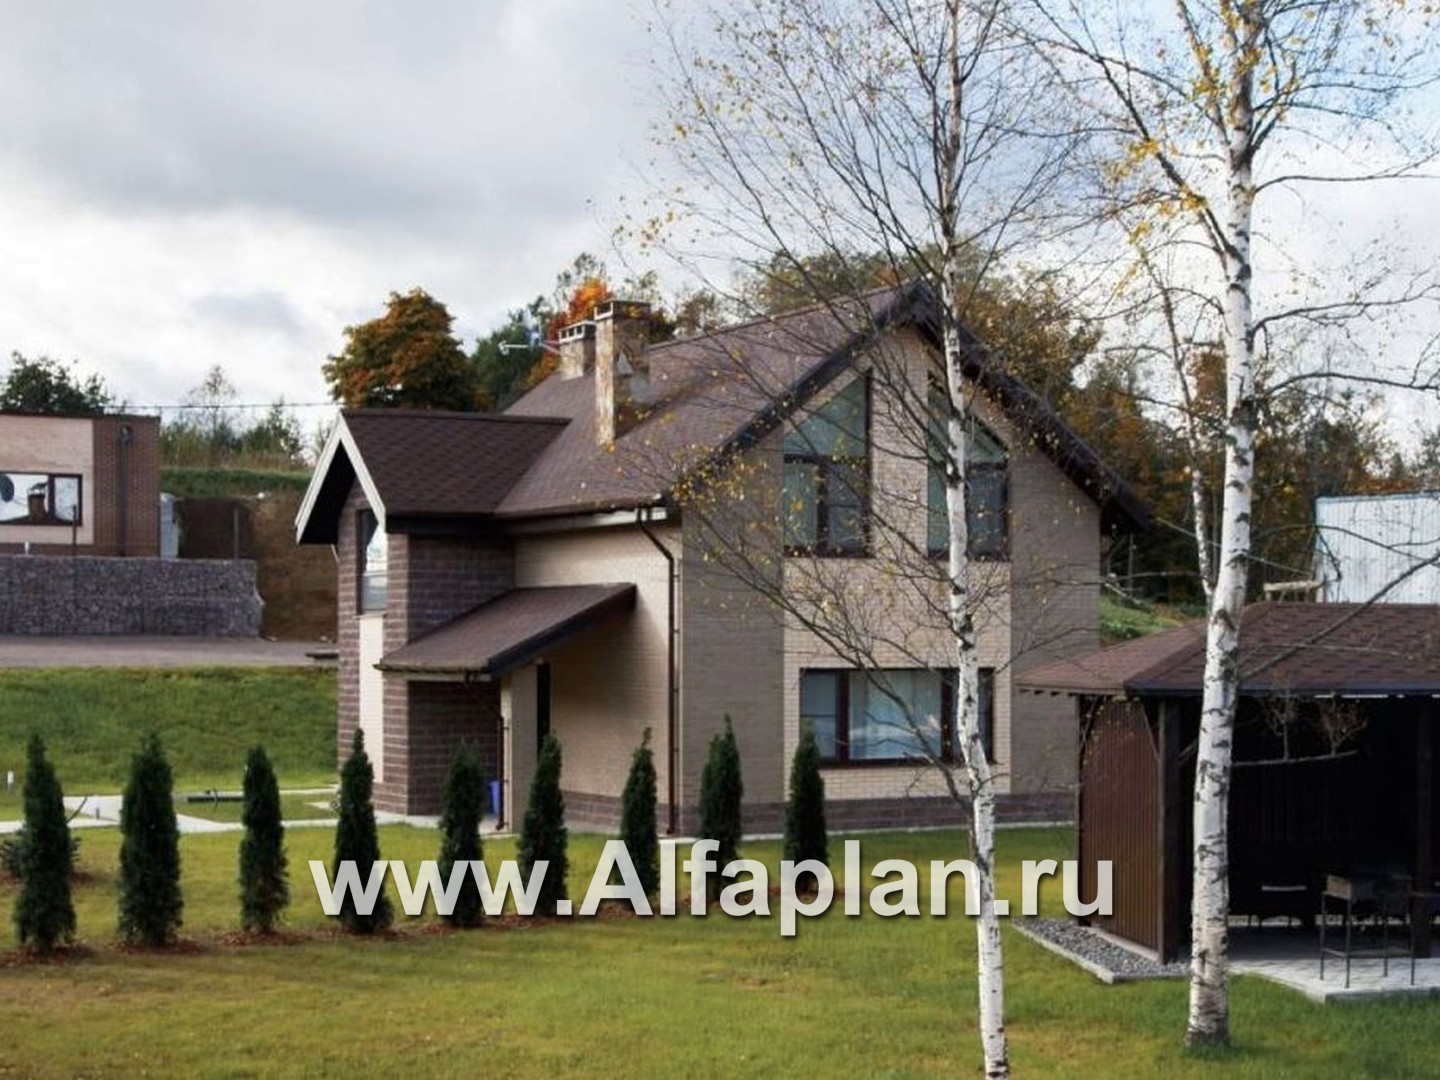 Проекты домов Альфаплан - «Вишневый сад»- проект небольшого дома или дачи - дополнительное изображение №3